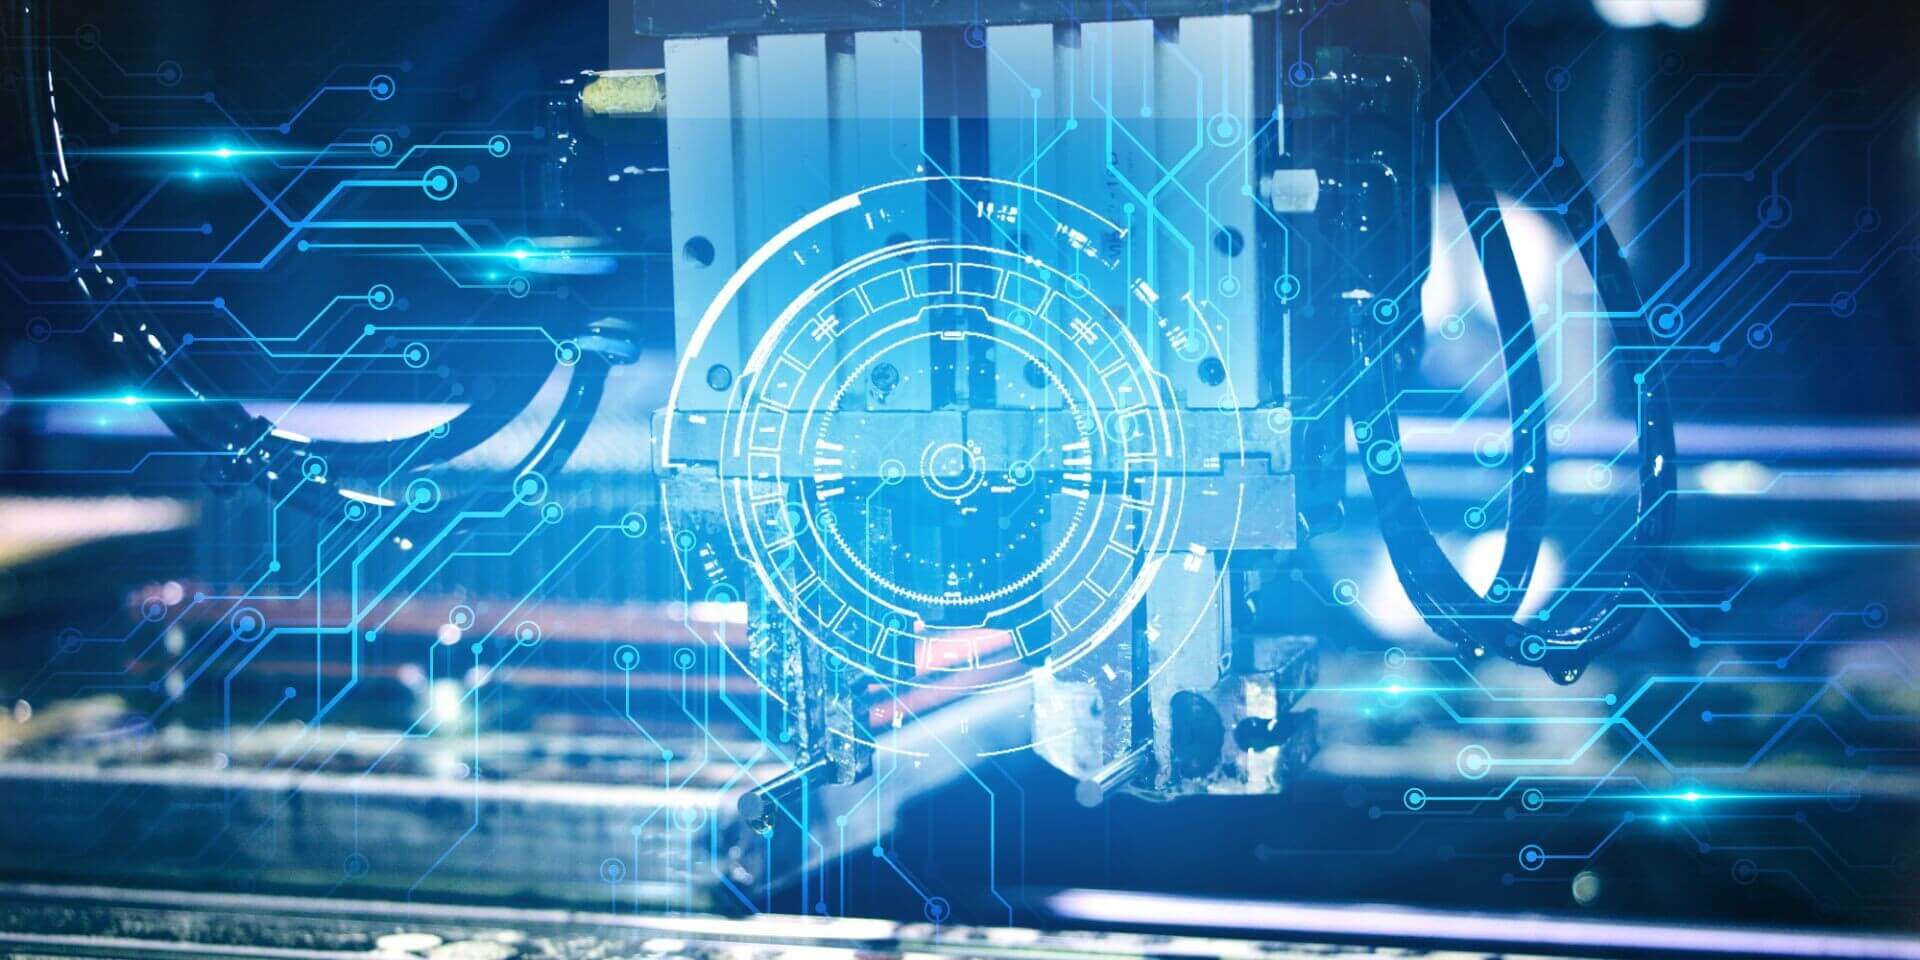 这张图片展示了一台工业机械臂在高科技背景下工作，图中有数字化界面和蓝色光线，给人一种未来工业自动化的感觉。